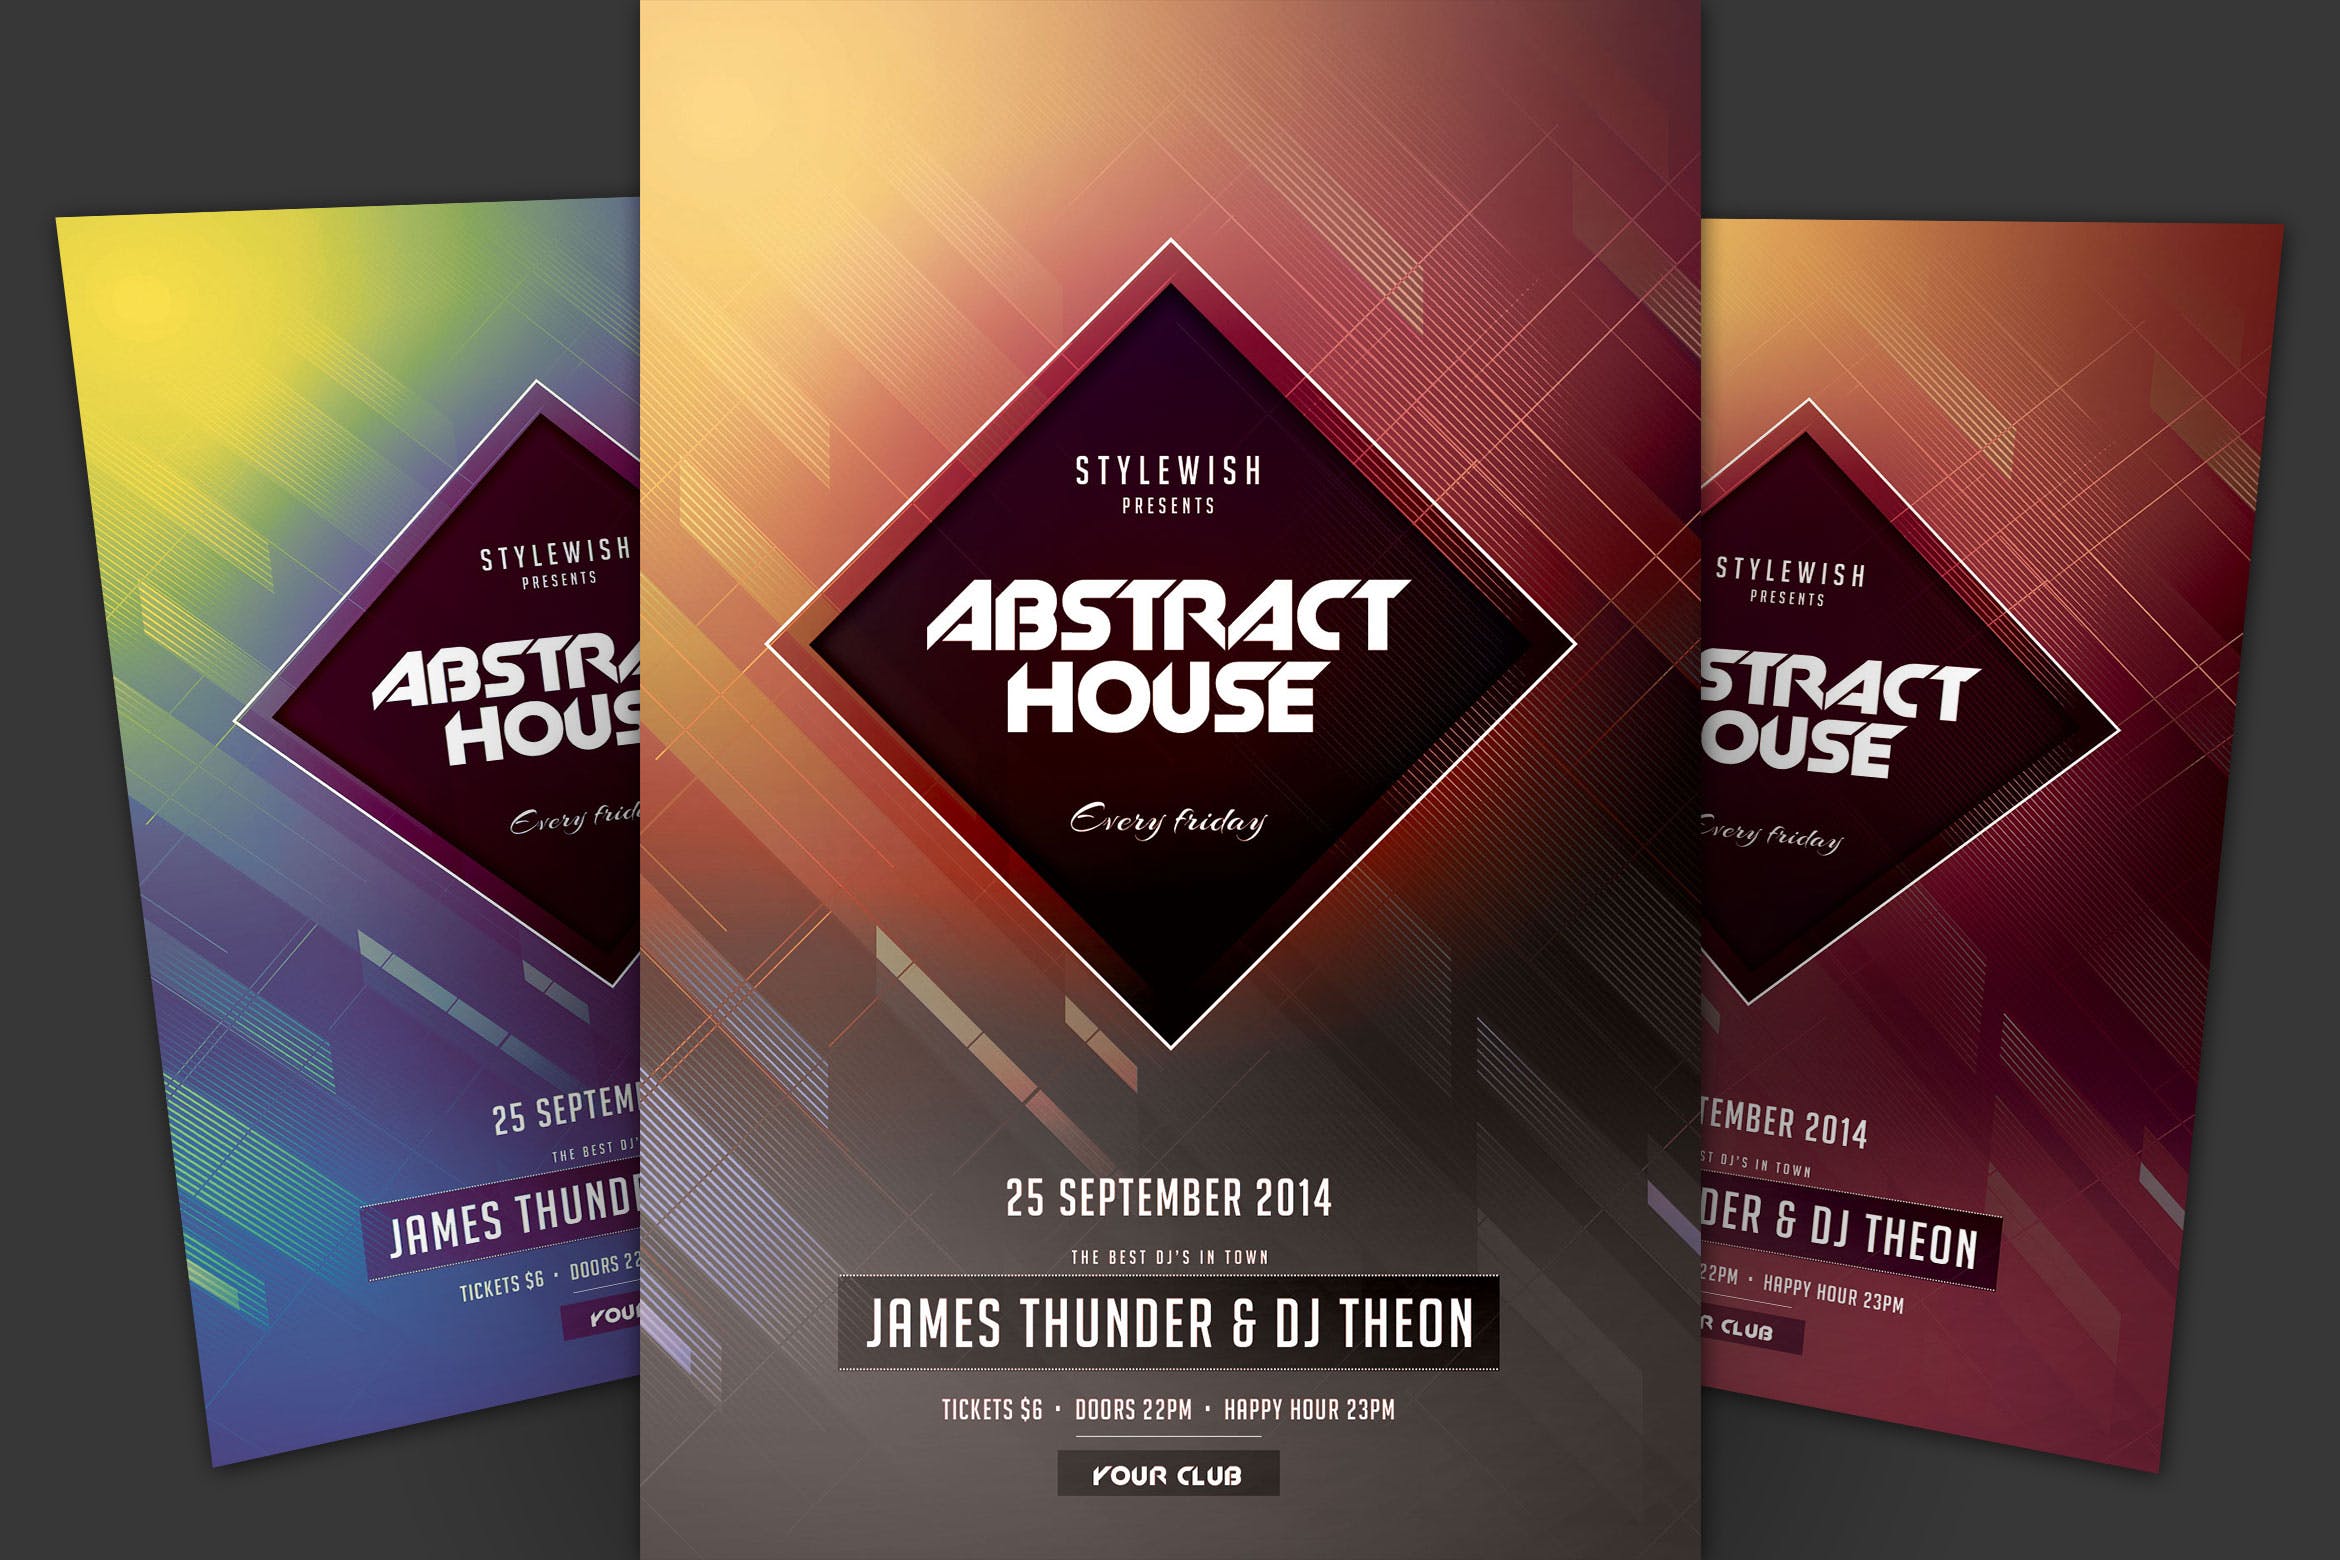 抽象设计风格现代音乐活动海报传单16设计网精选PSD模板 Abstract House Flyer插图